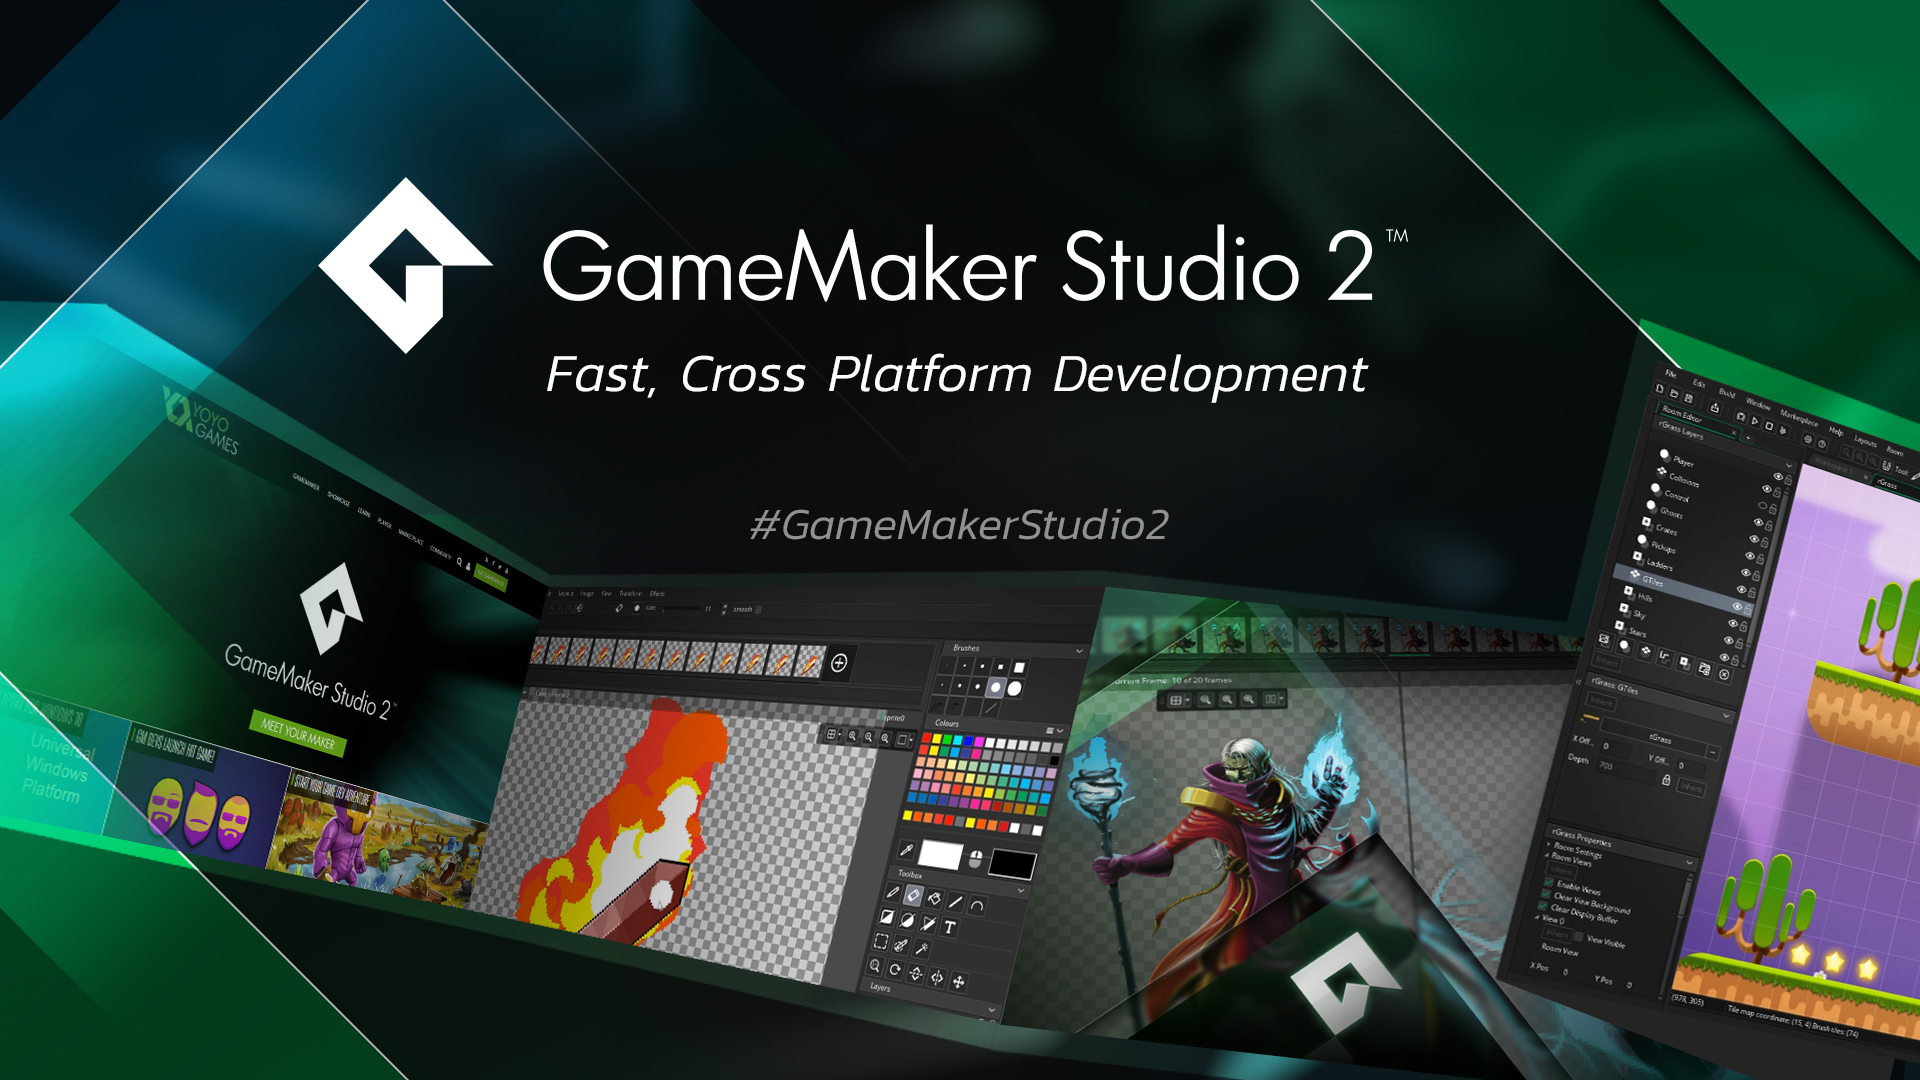 gamemaker studio 2 update